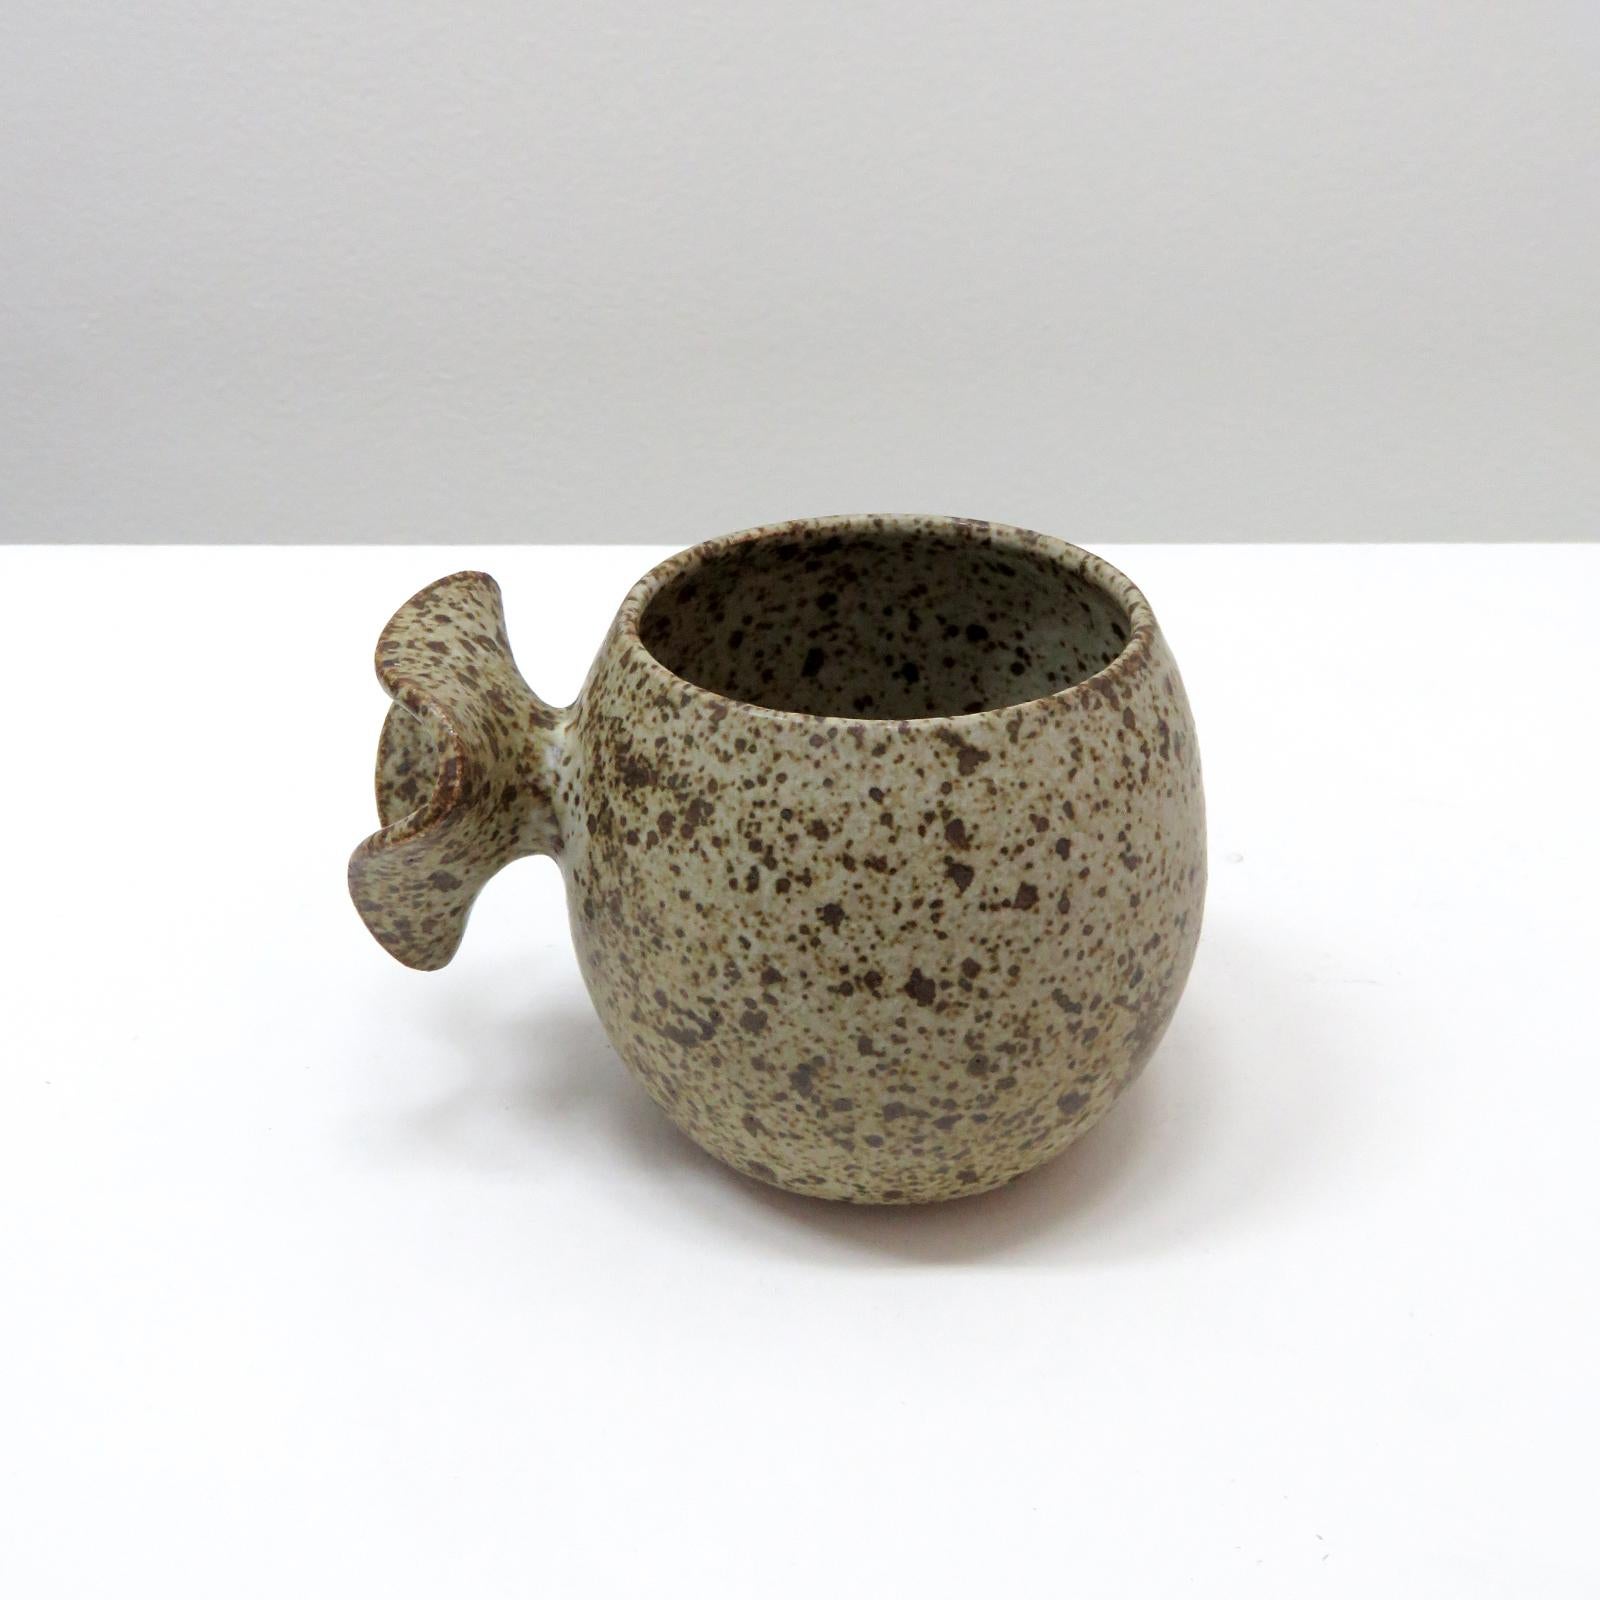 wunderbare 'Bud'-Tassen, handgefertigt vom Keramiker Jed Farlow aus Los Angeles für Farlow Design. Hochgebranntes Steingut mit mattweiß gesprenkelter Glasur. Diese einzigartigen Tassen wurden mit einem menschenzentrierten Ansatz entwickelt und